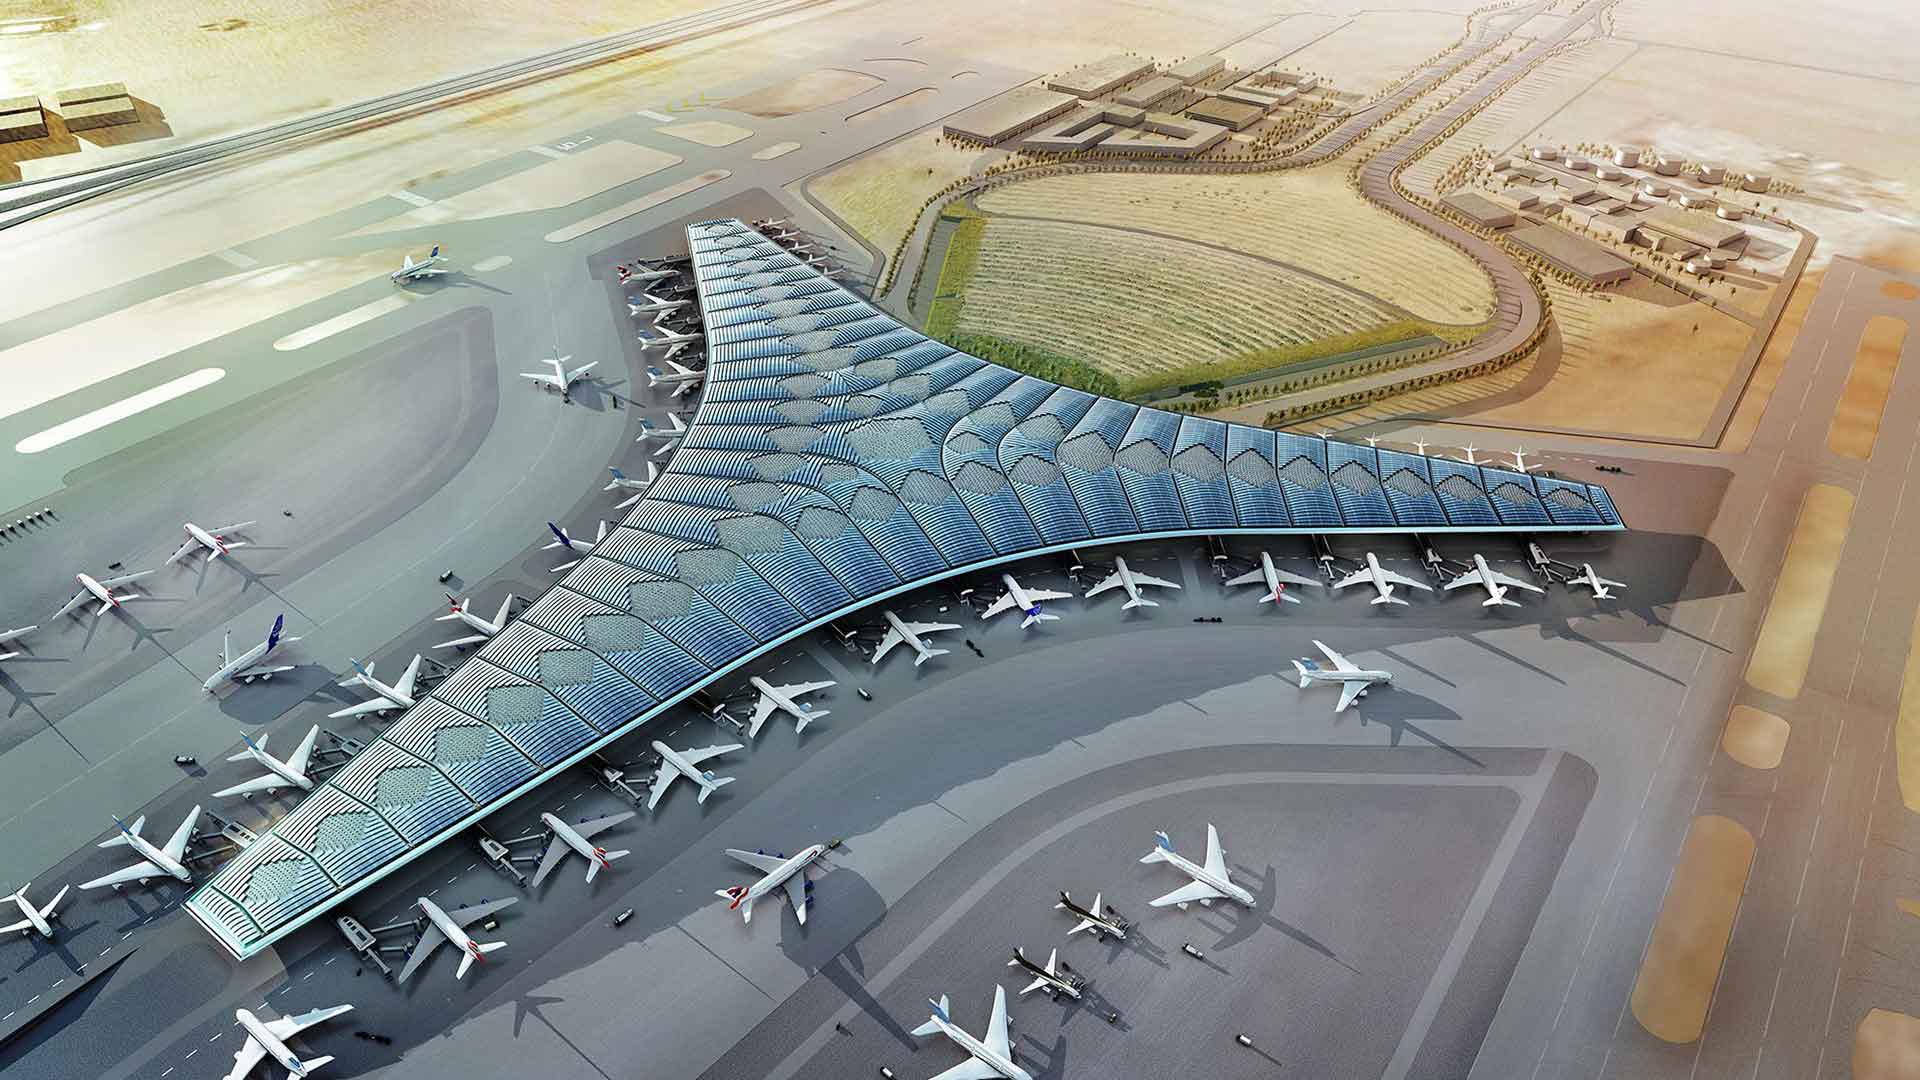 Το Διεθνές Αεροδρόμιο του Κουβέιτ είναι ένα αεροδρόμιο που βρίσκεται στη Φαρβανίγια του Κουβέιτ, 15,5 χλμ. (9,6 μίλια) νότια της πόλης του Κουβέιτ και καλύπτει μια έκταση 37,7 τετραγωνικών χιλιομέτρων (14,6 τετραγωνικά μίλια).Είναι ο κόμβος των αεροπορικών εταιρειών Al Jazeera και Kuwait.